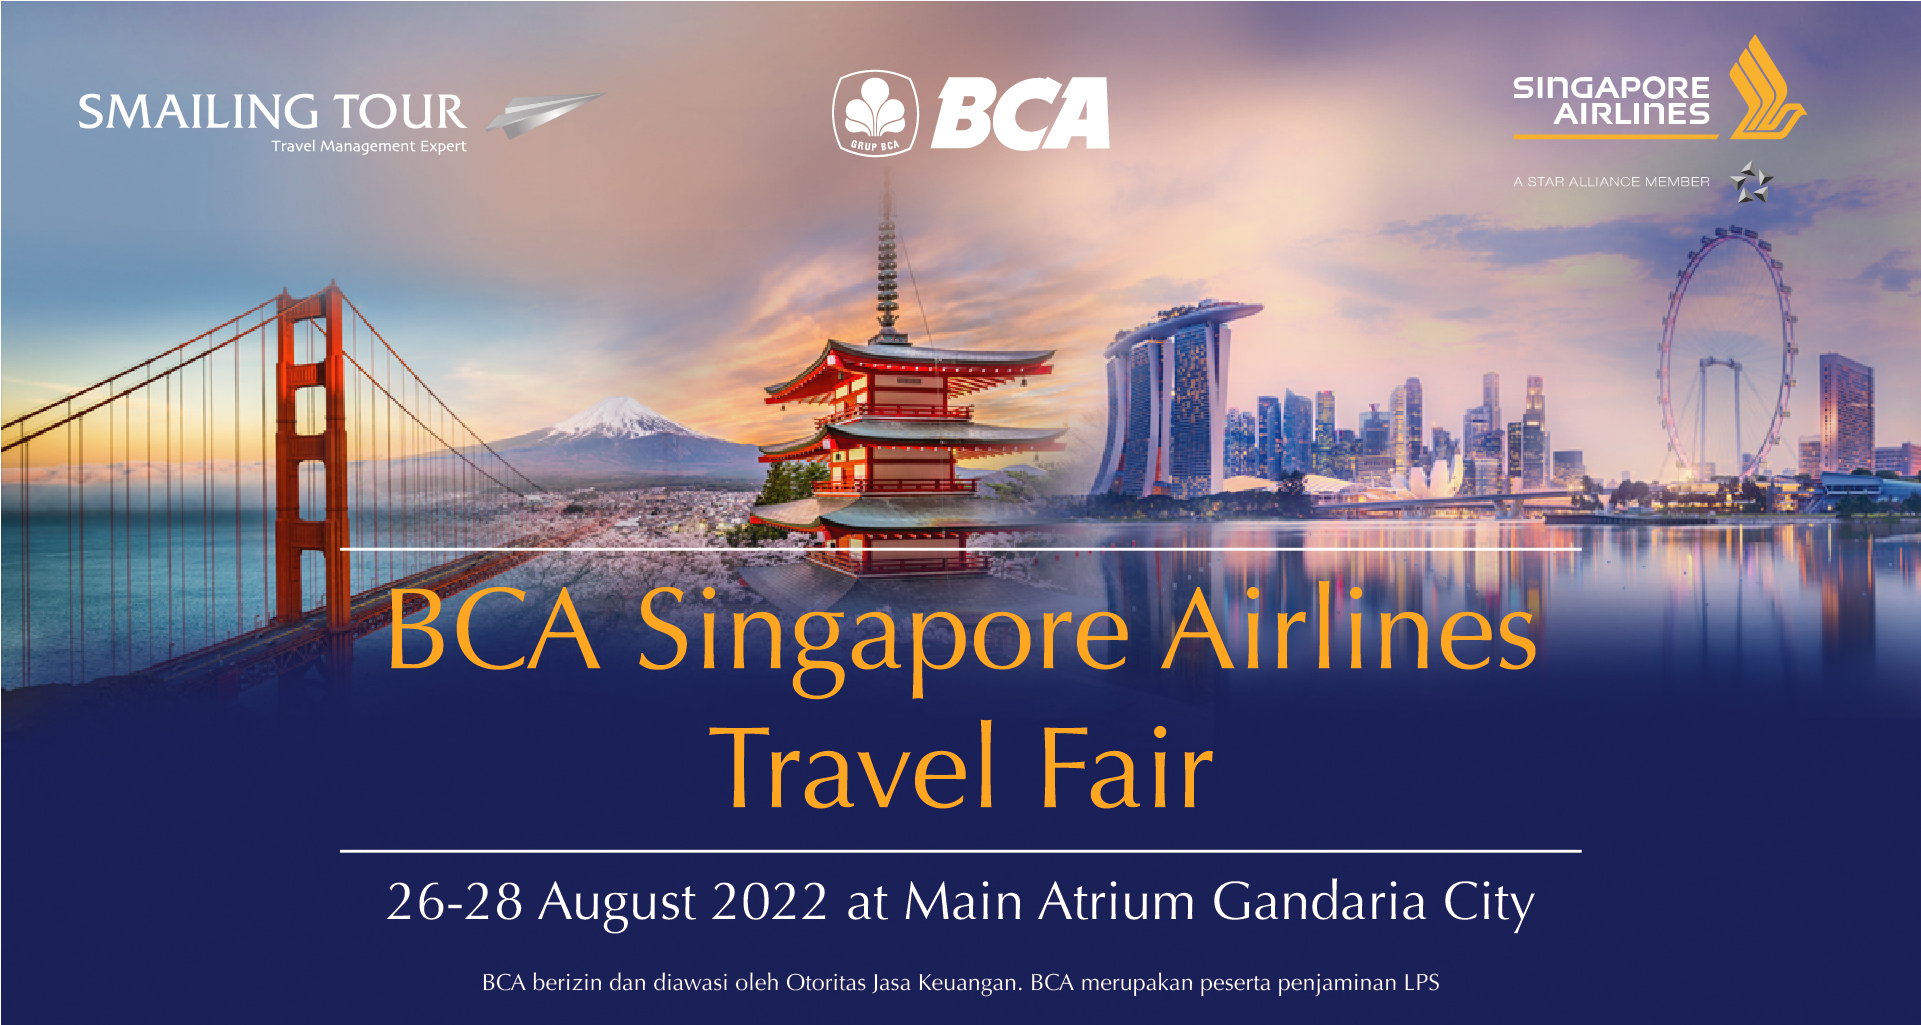 BCA Singapore Airlines Travel Fair 26-28 Aug 2022